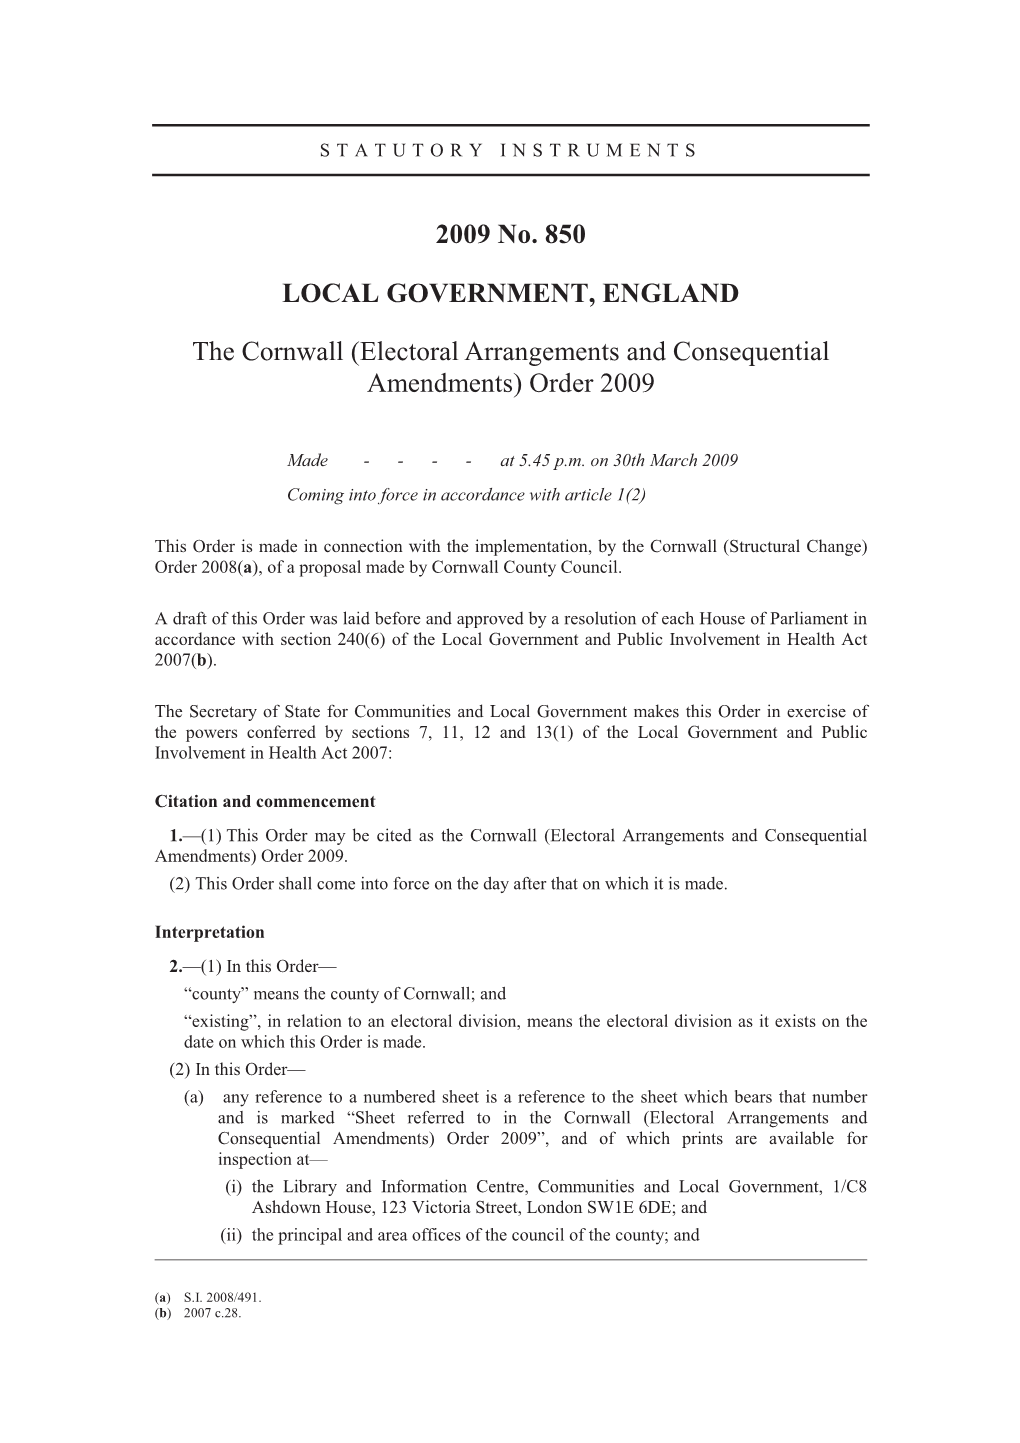 Electoral Arrangements and Consequential Amendments) Order 2009